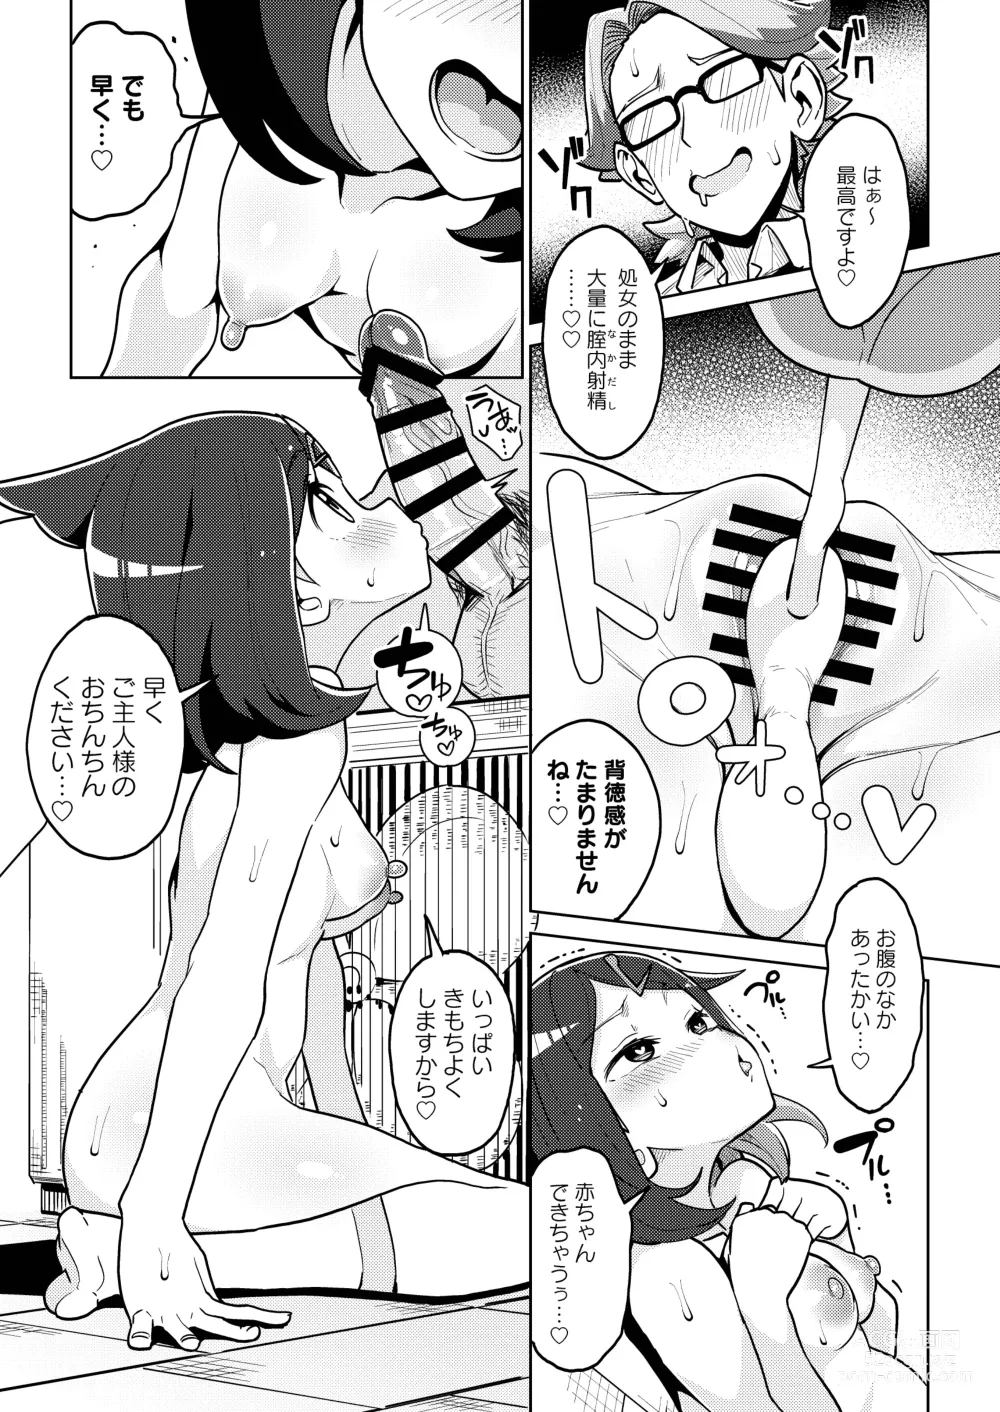 Page 14 of doujinshi Psycho Power tte Nan desu ka?